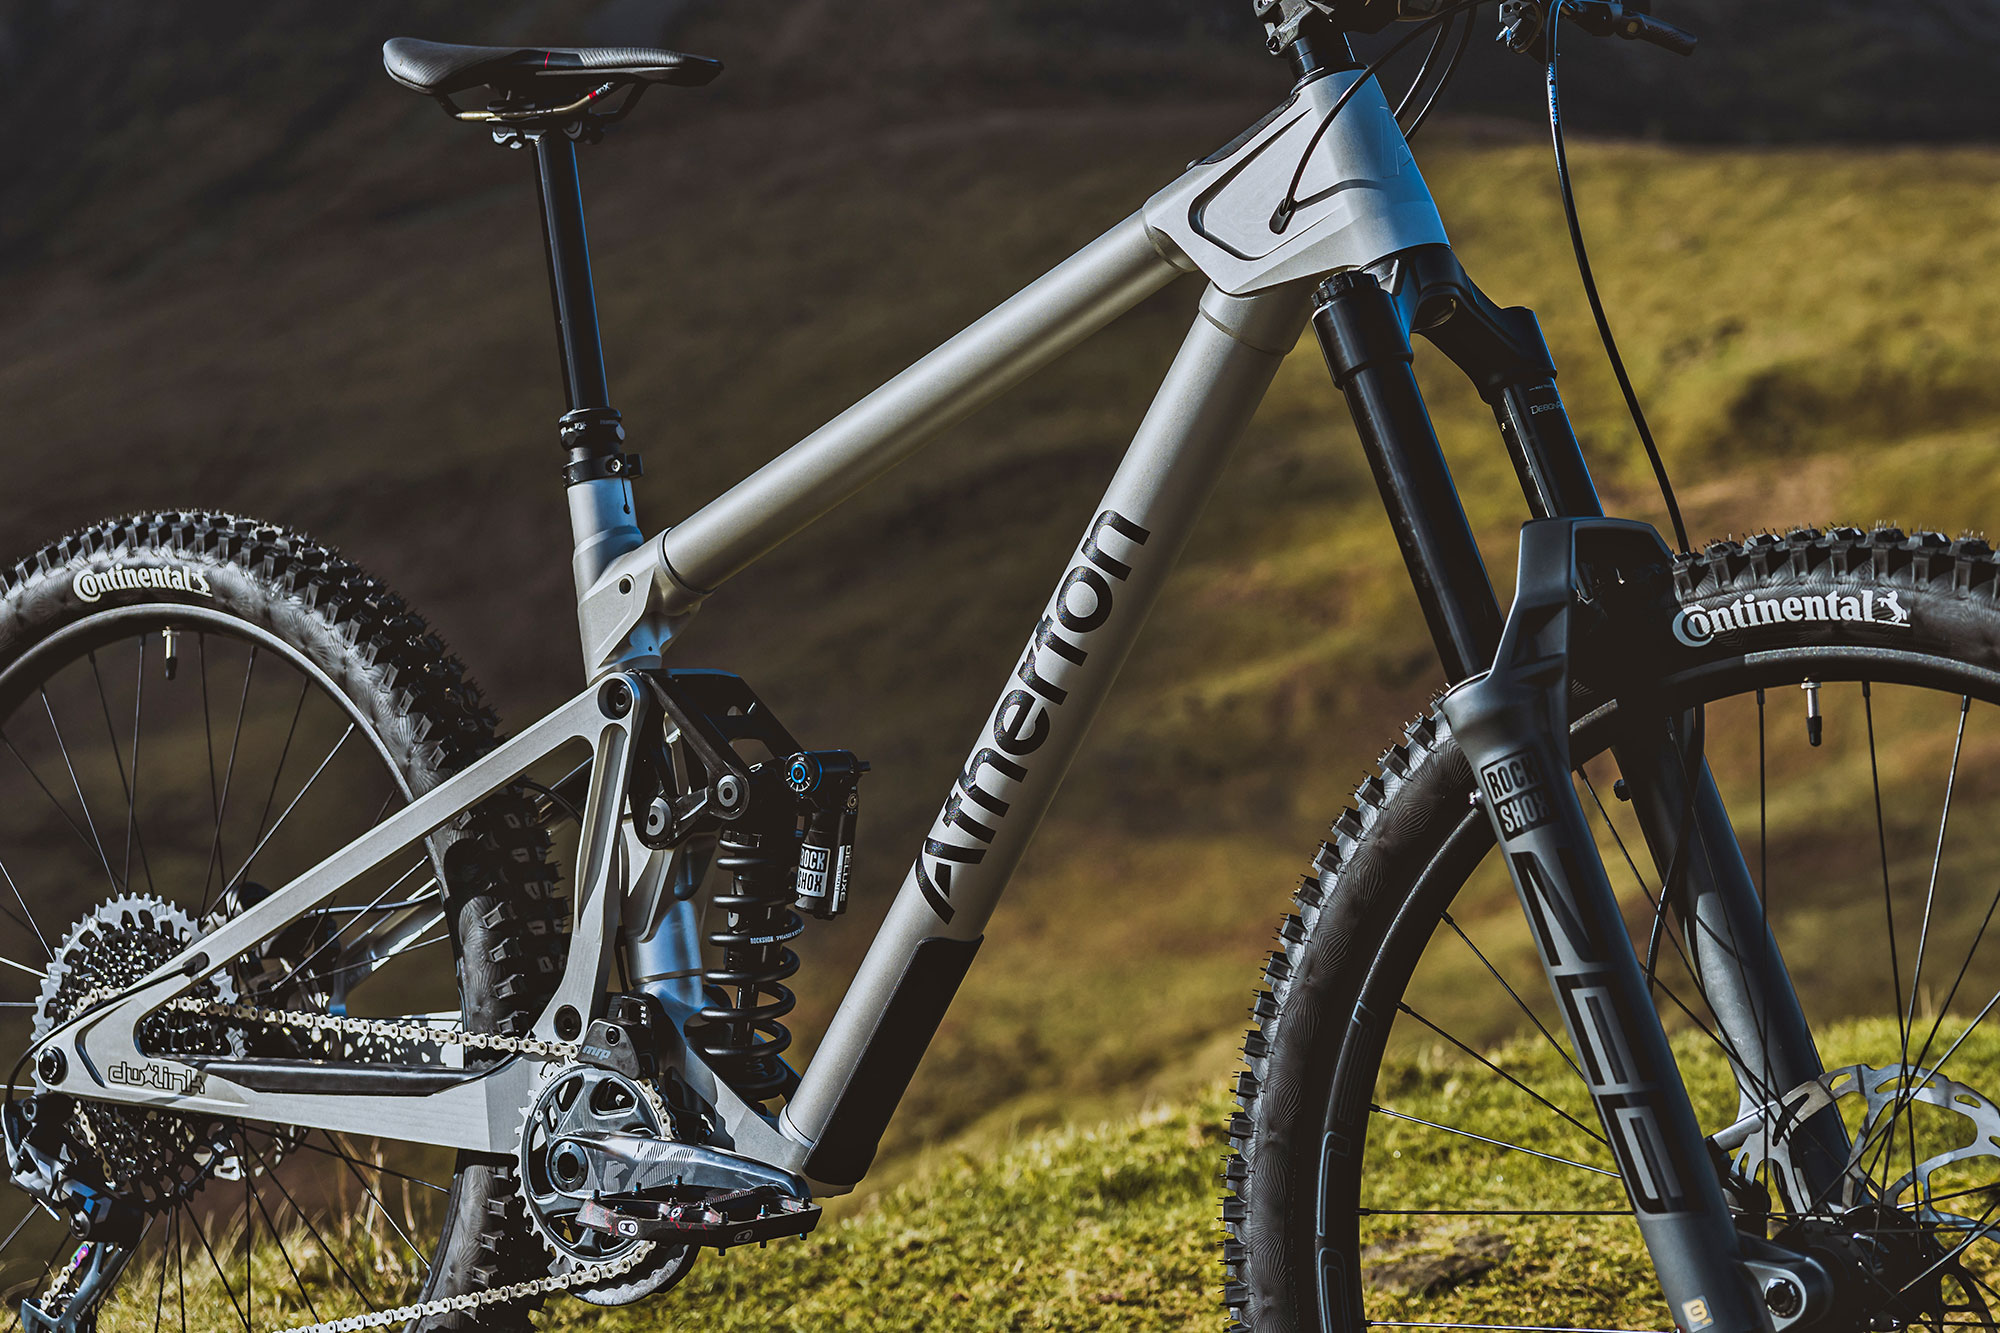 Atherton S170 affordable alloy enduro mountain bike, up-close